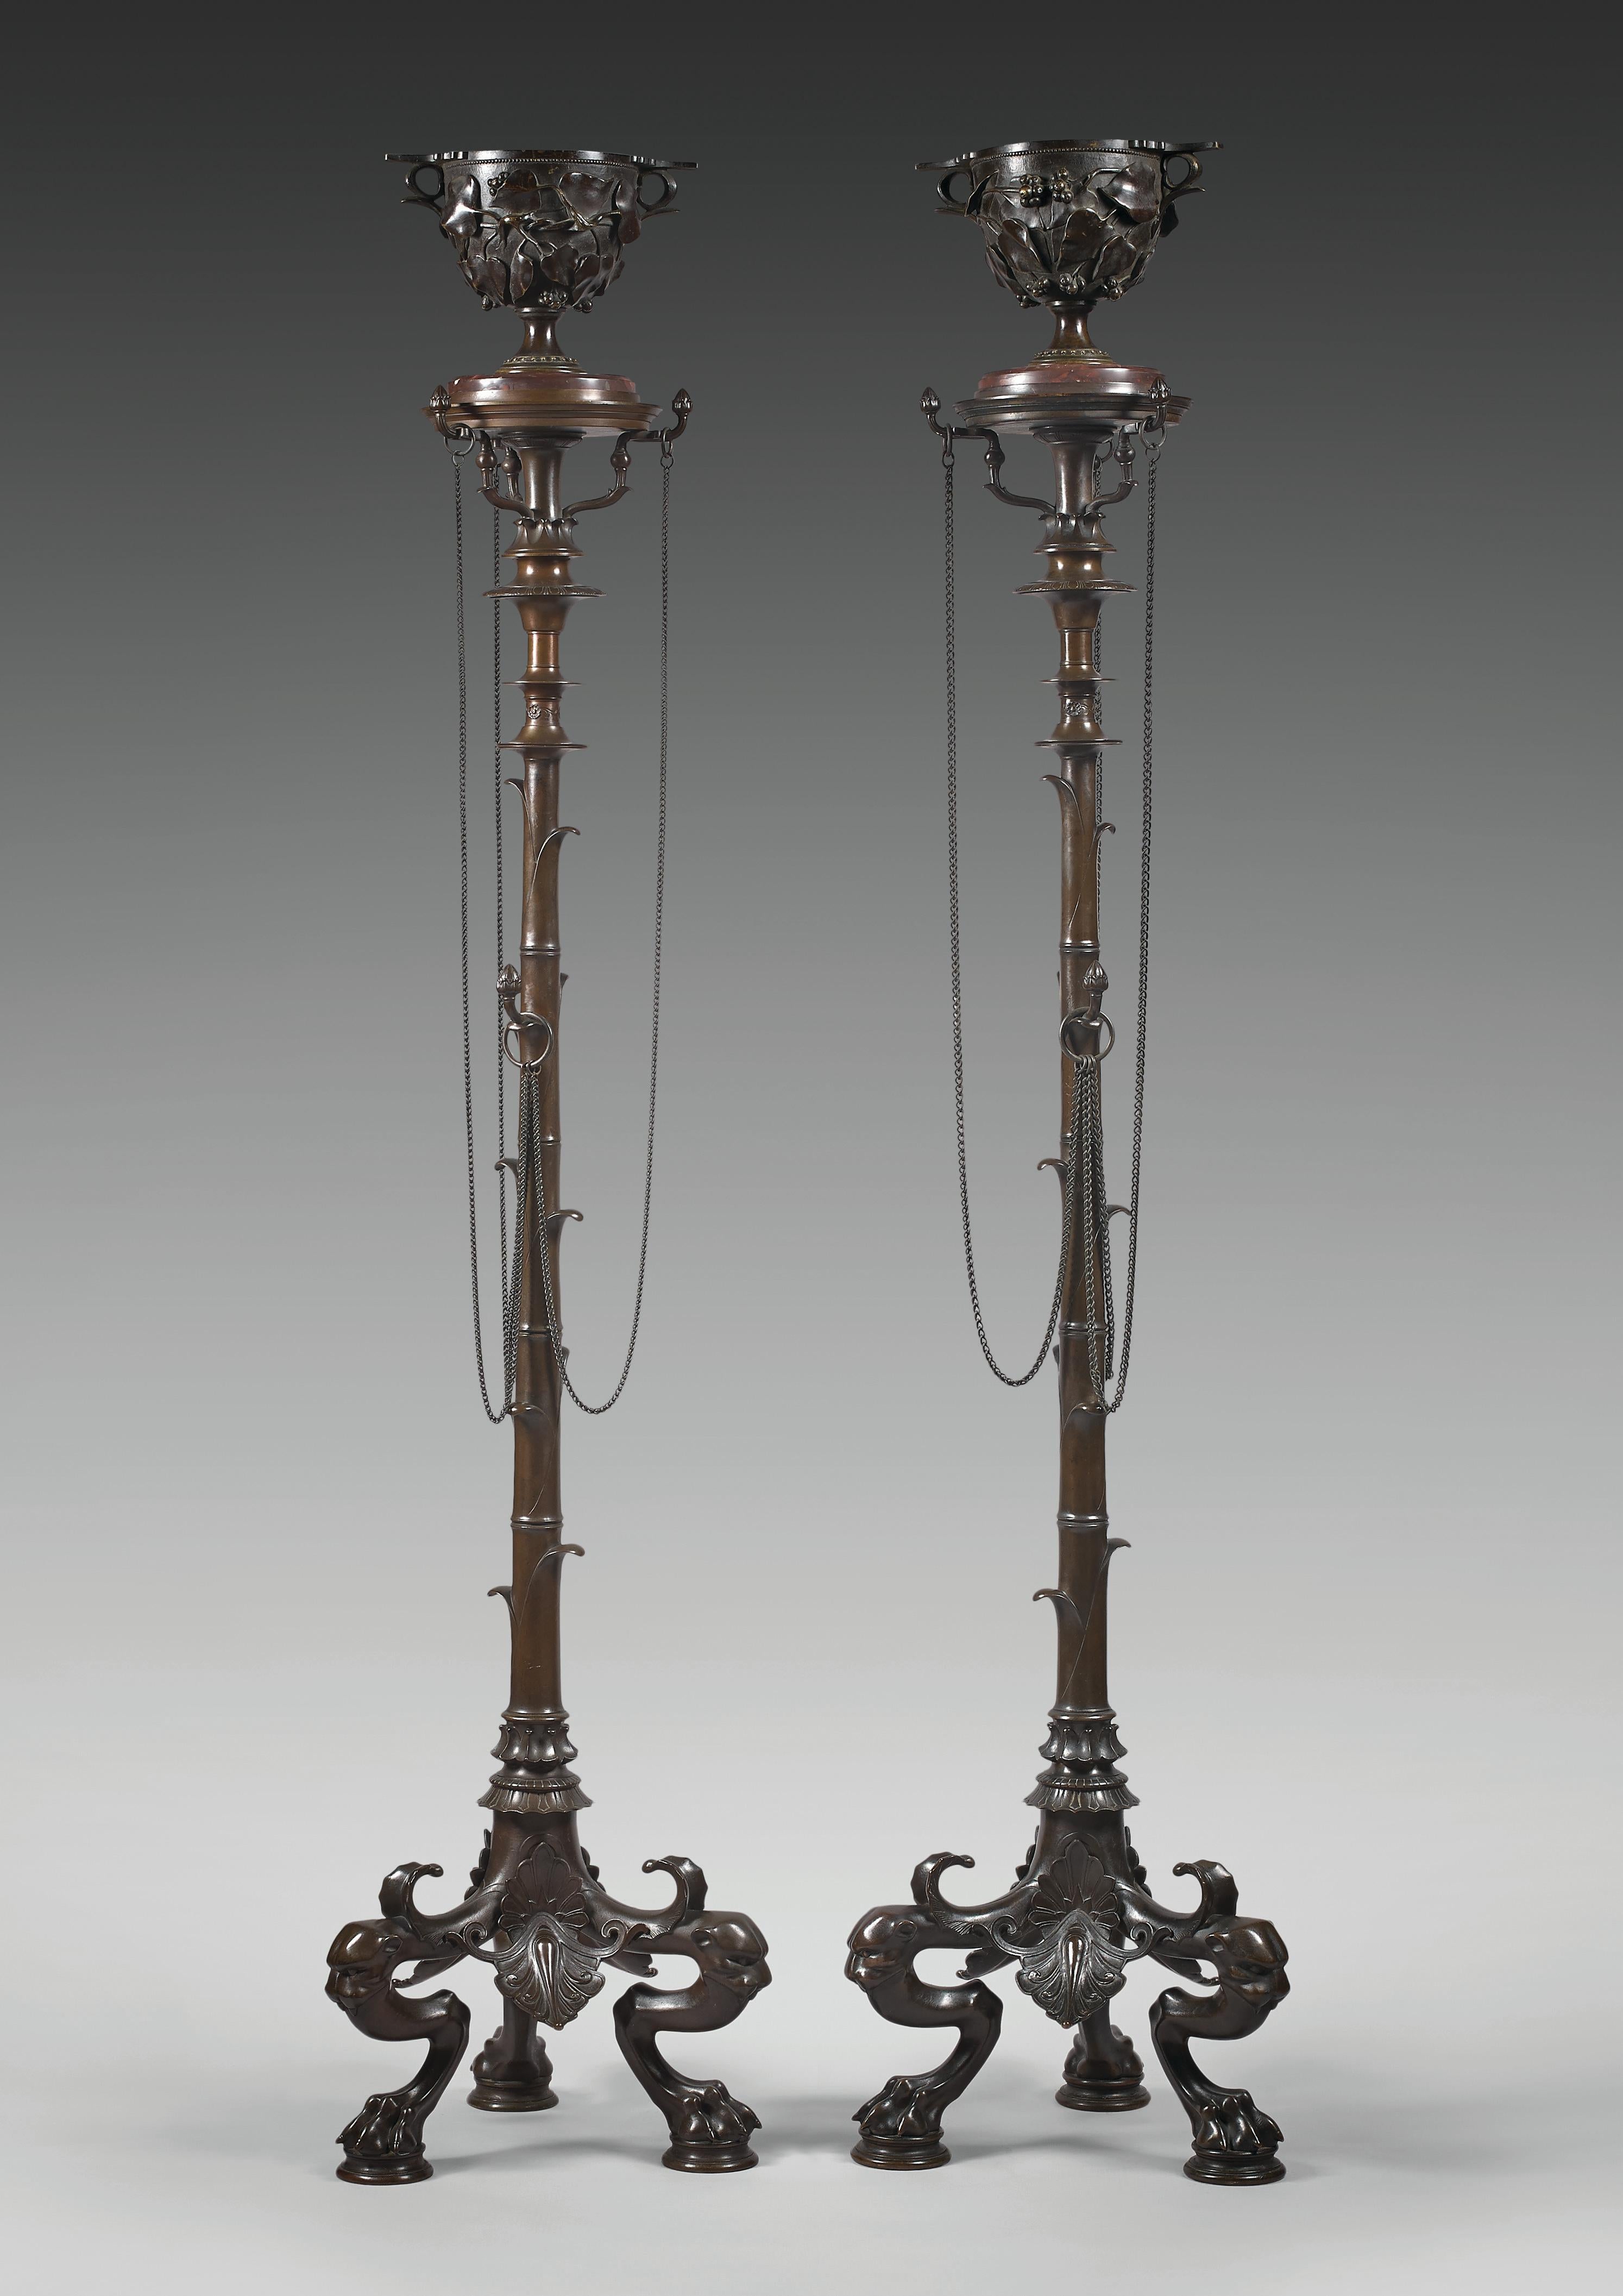 Ein ähnliches Modell wurde auf der Pariser Weltausstellung 1855 vorgestellt

Gesamthöhe : 154 cm (60 5/8 in.) ; Breite : 33 x 33 cm (13 x 13 in.)
Tasse: Höhe 17 cm (6 ¾ Zoll)

Schönes Paar von Bronze steht auch genannt Bamboo Kandelaber. Jede